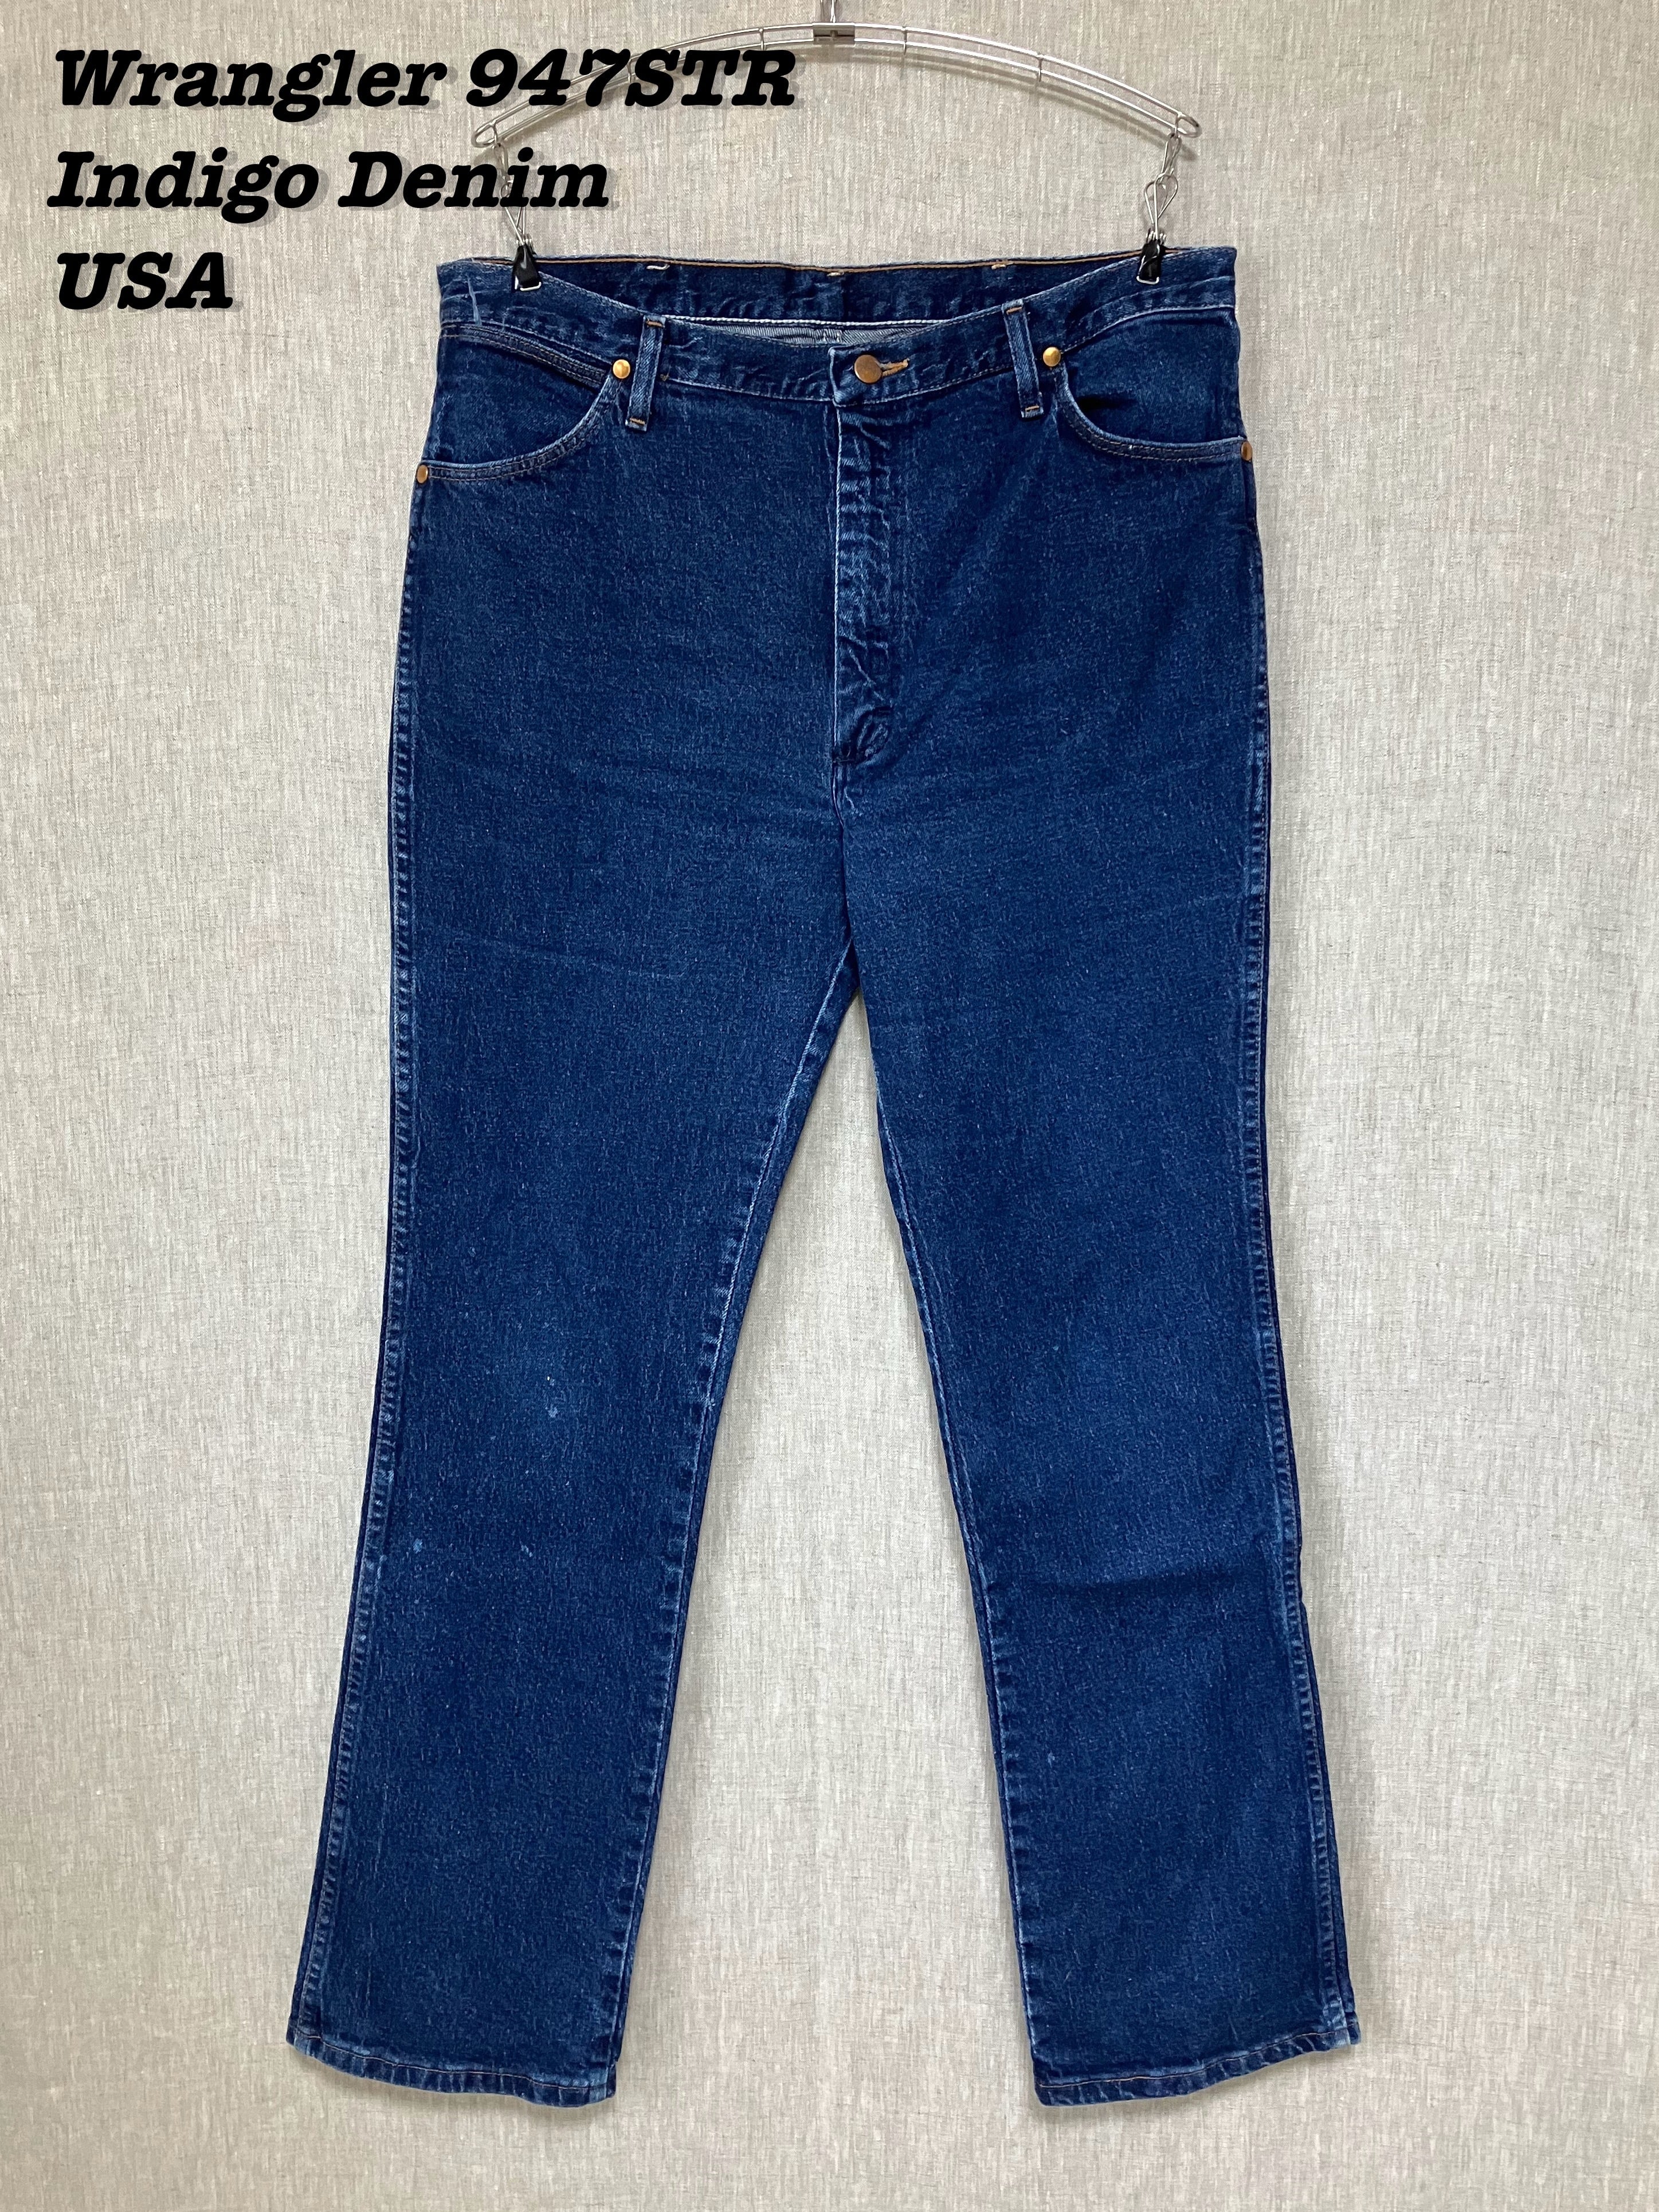 Wrangler 947STR Indigo Denim Pants Made in USA W36 L32 | Loki ...